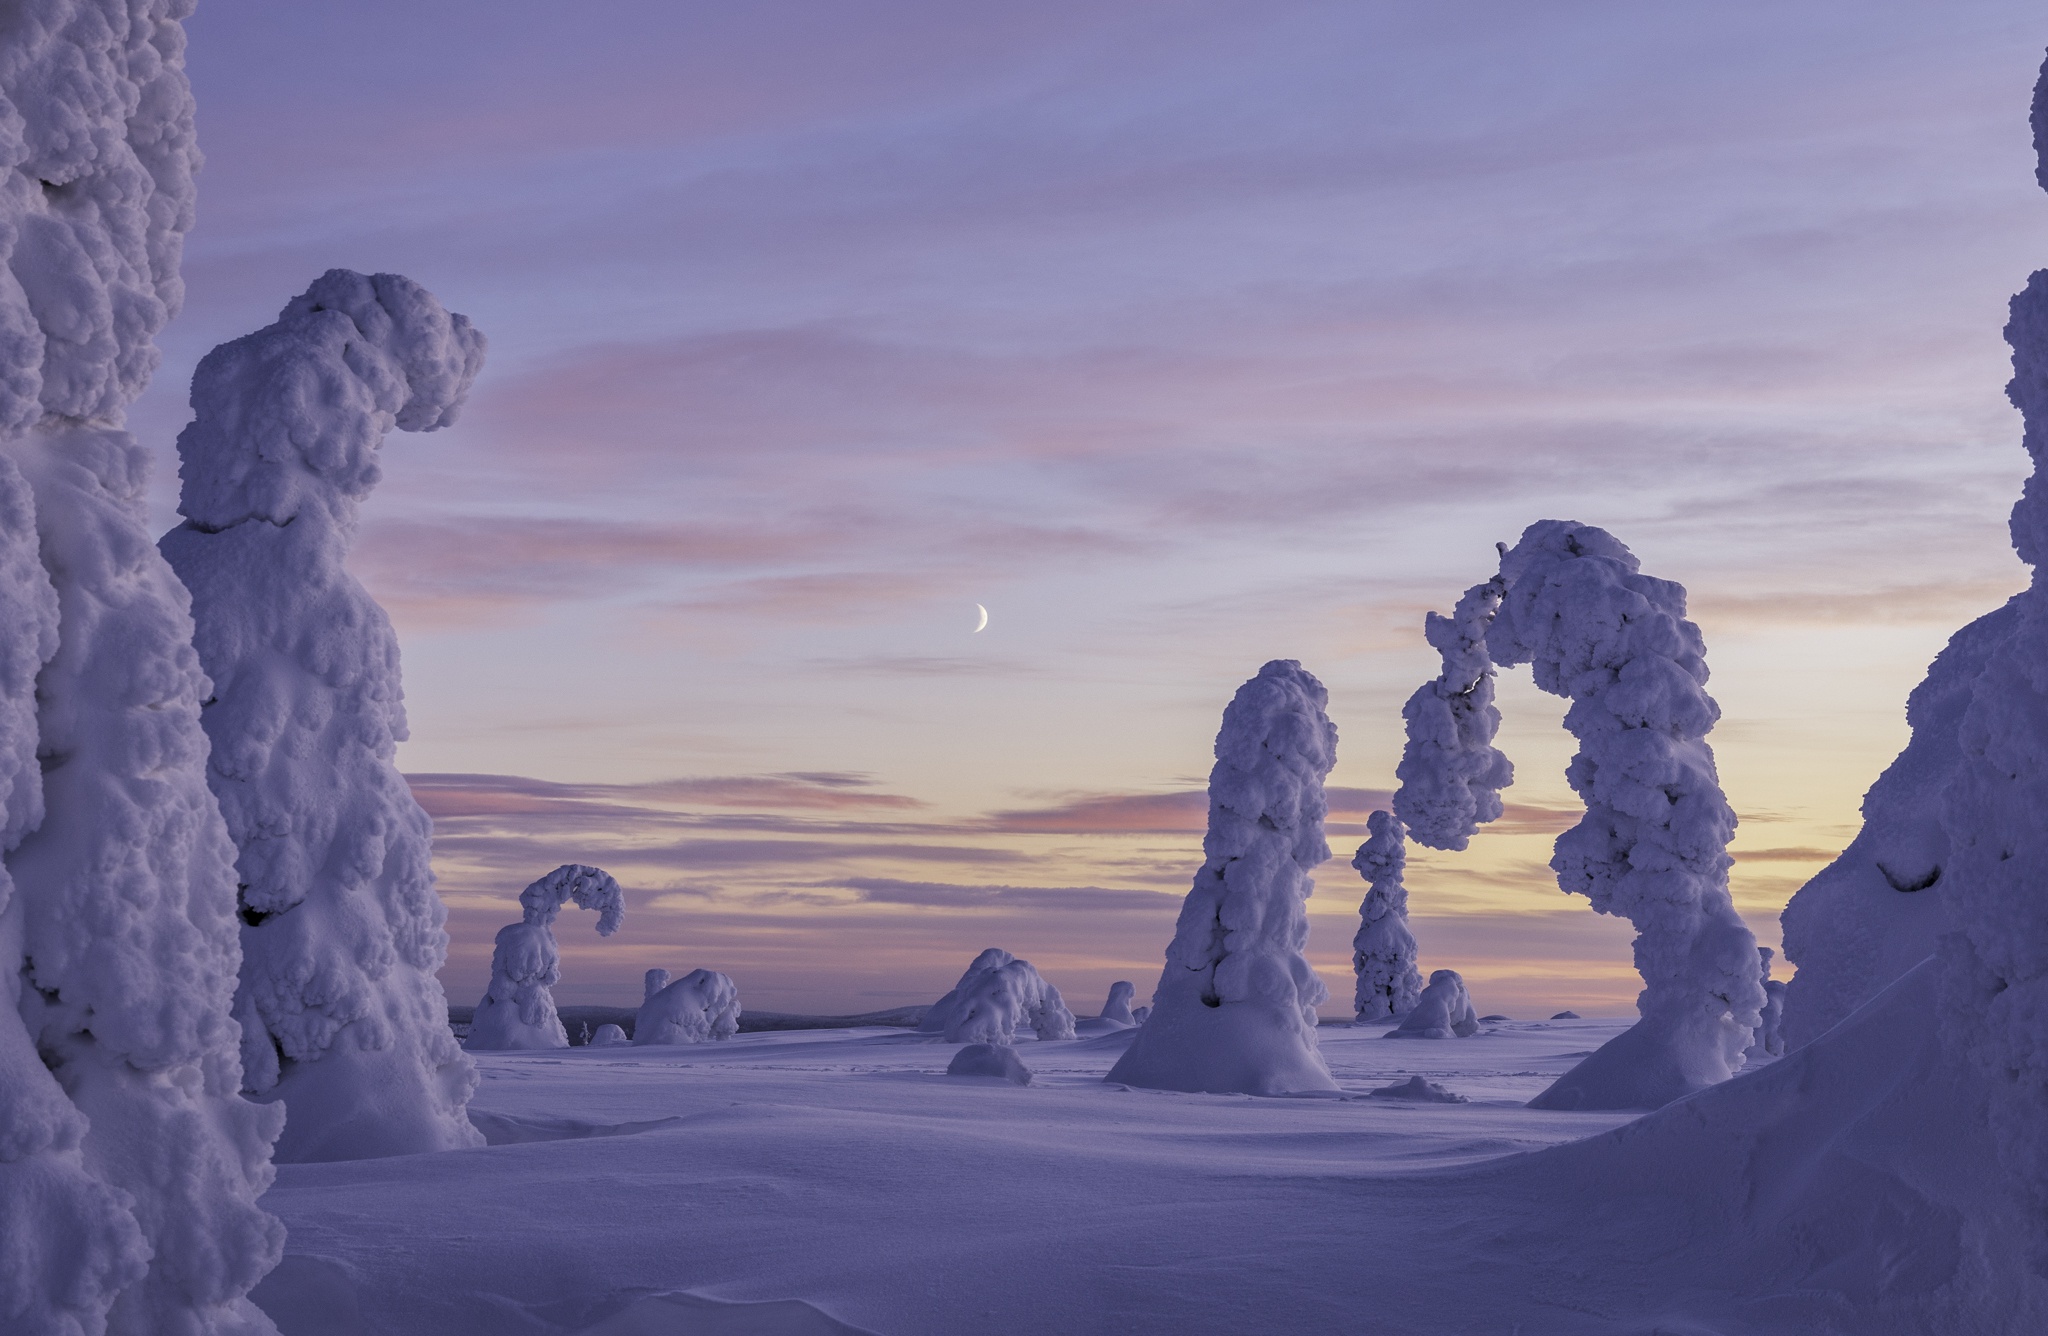 Скачать обои бесплатно Зима, Природа, Снег, Ландшафт, Финляндия, Земля/природа картинка на рабочий стол ПК